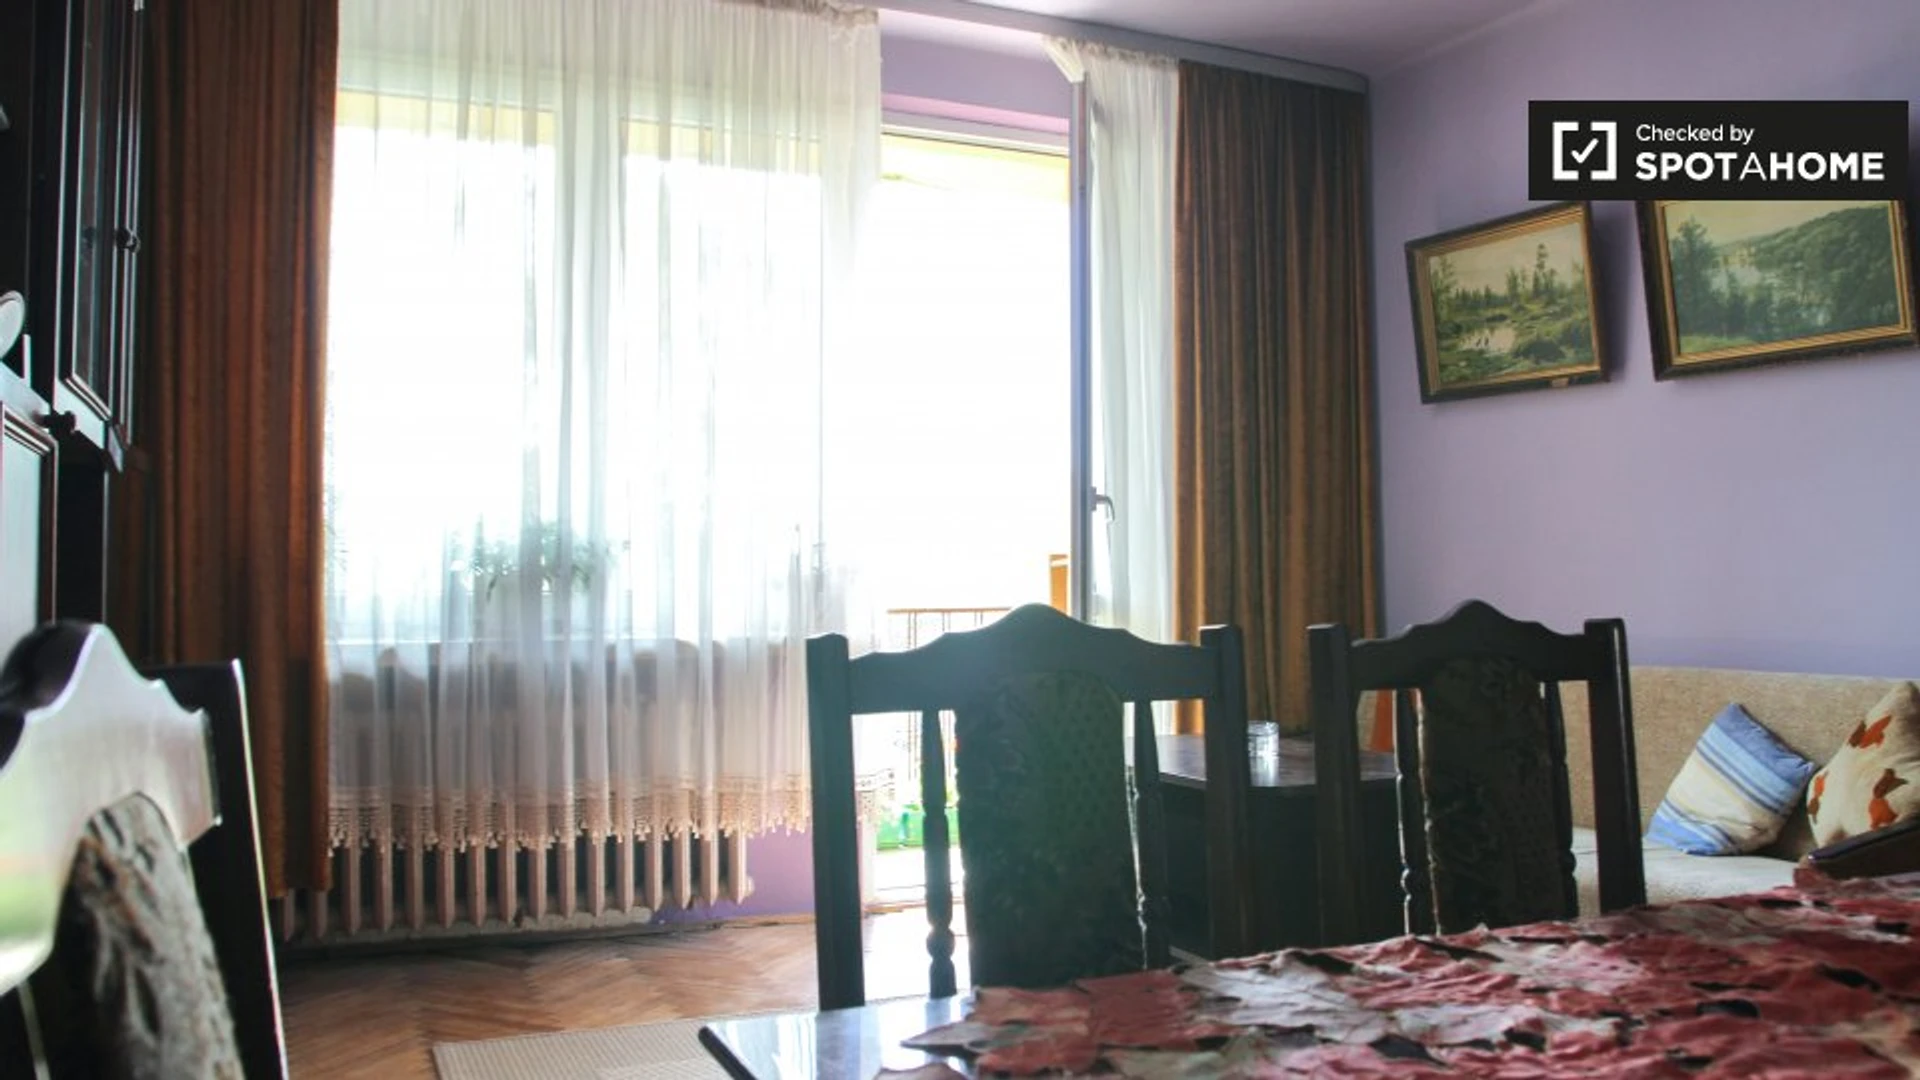 Alojamento com 3 quartos em Cracóvia